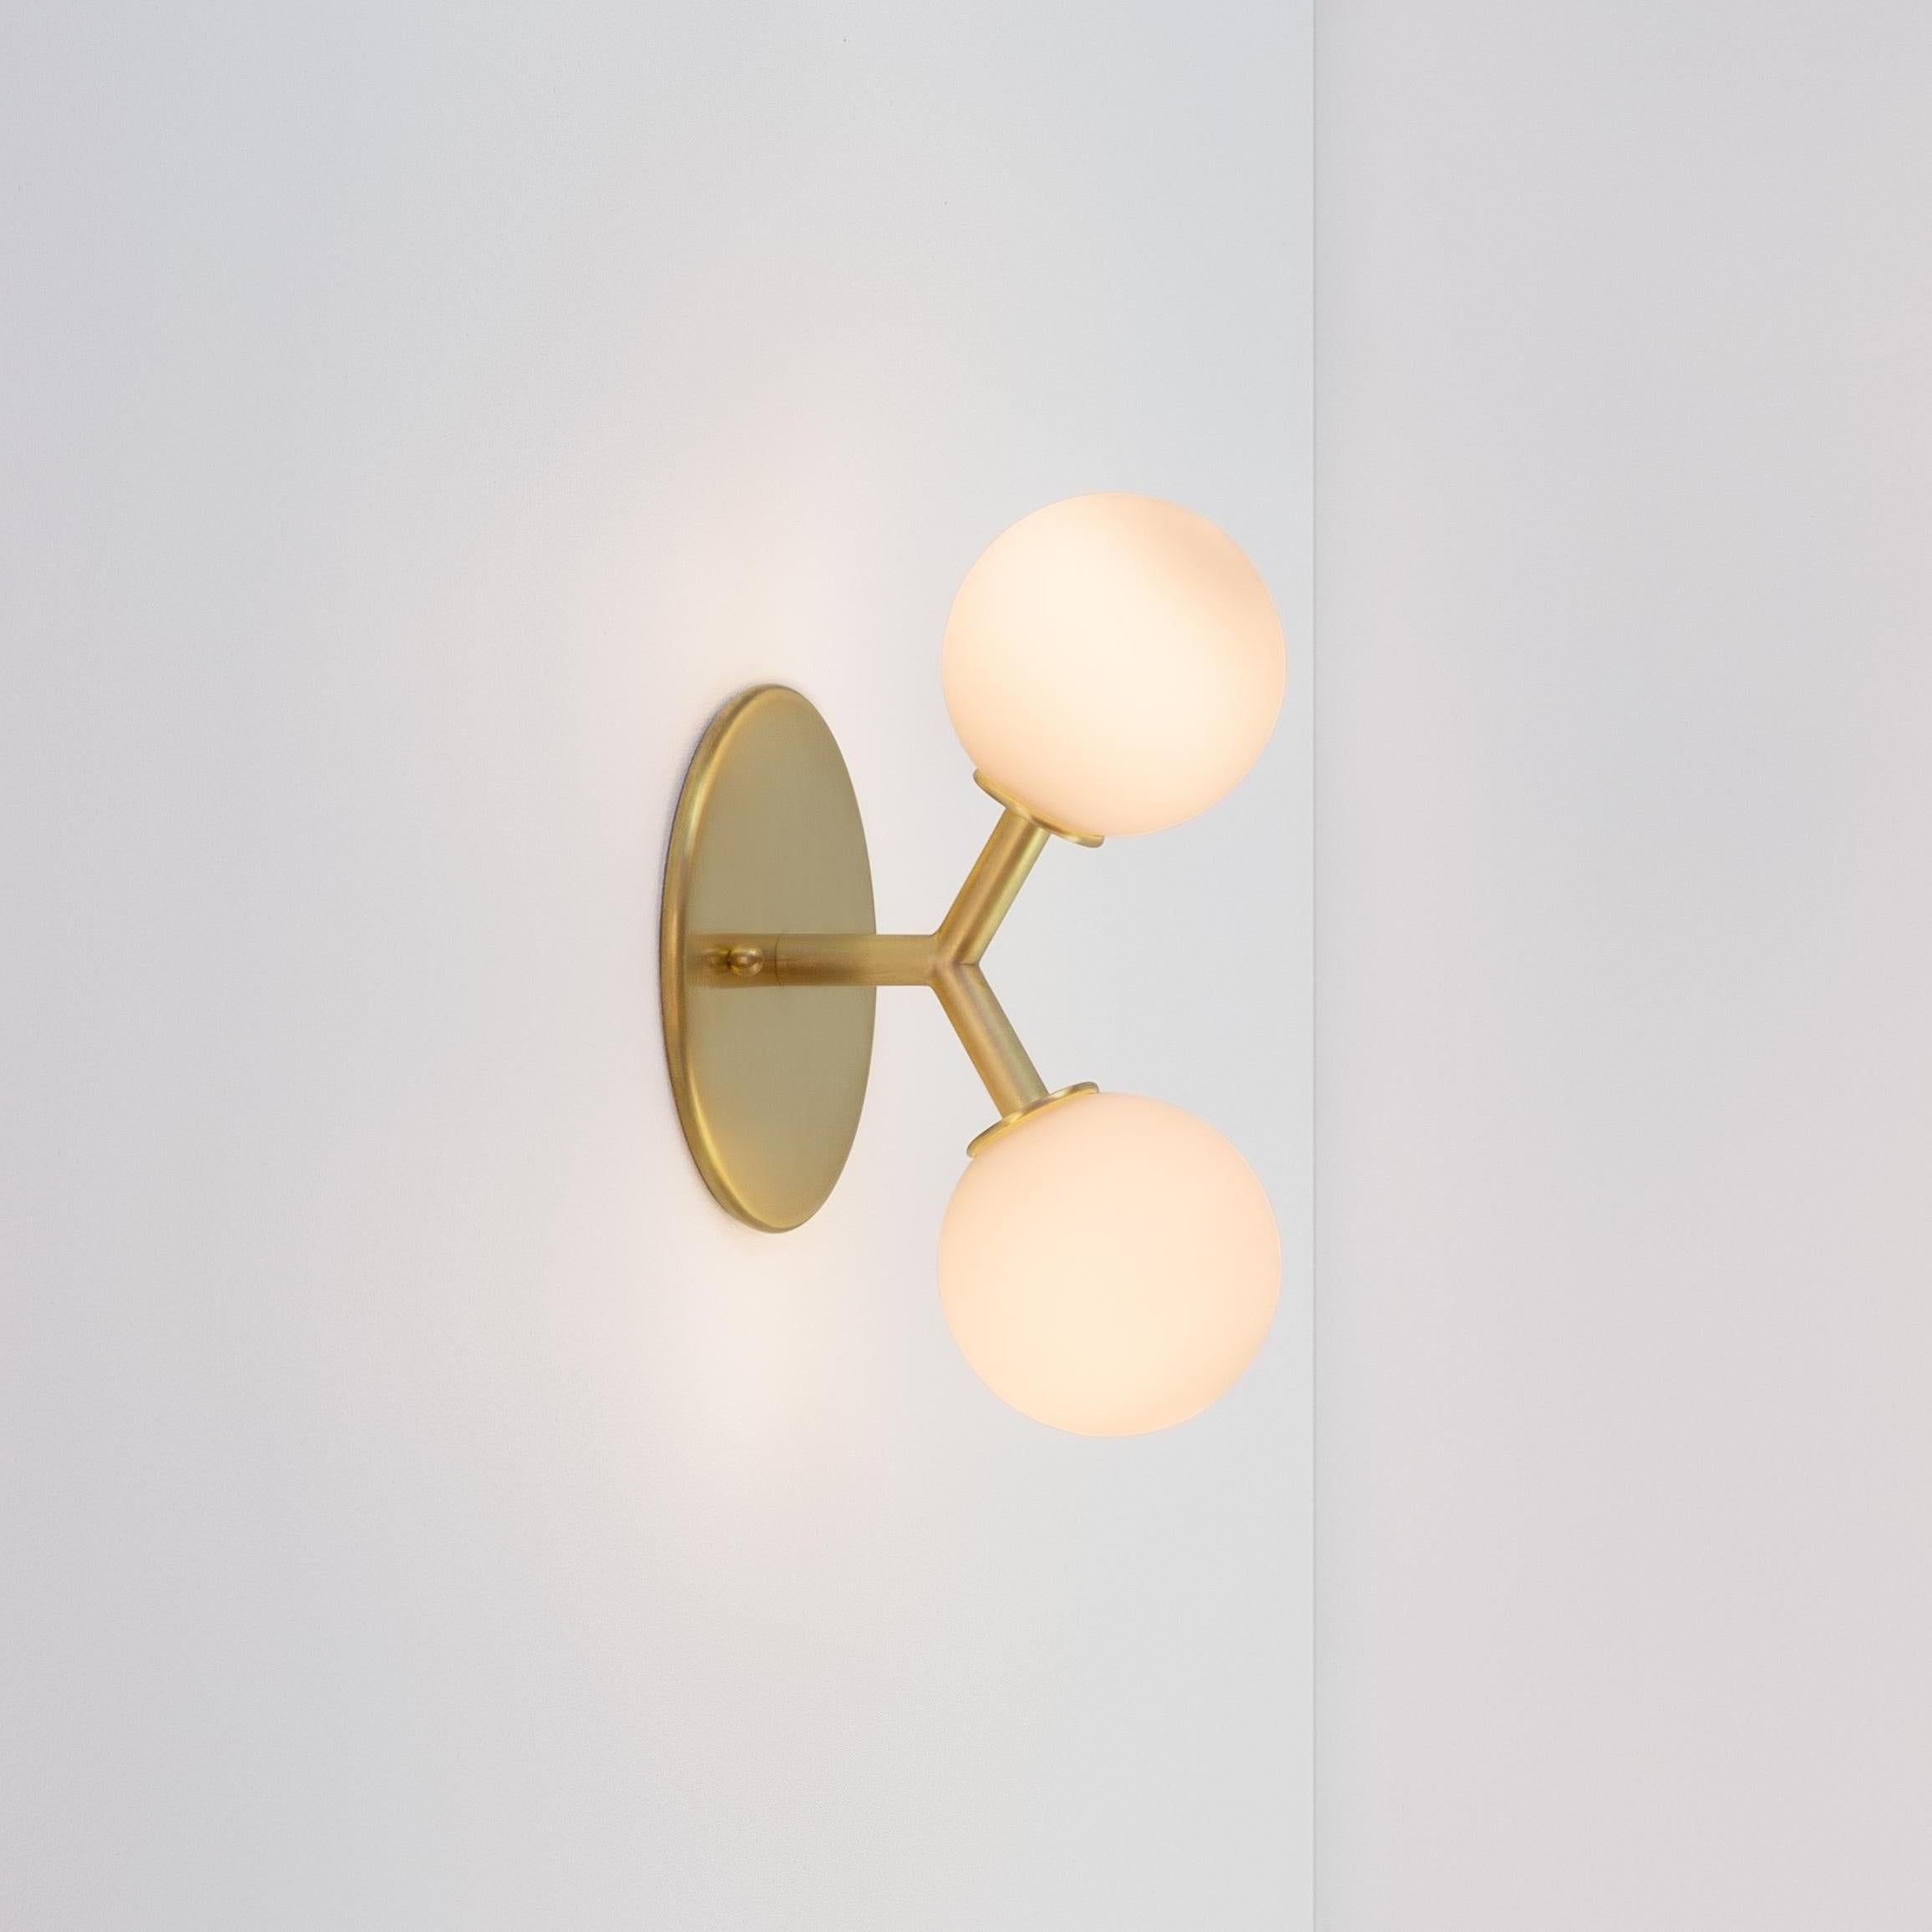 Dieses Angebot ist für 2x Y Sconce in Messing entworfen und hergestellt von Research Lighting.

MATERIALIEN: Messing & Glas
Ausführung: Rohes gebürstetes Messing 
Elektronik (pro Leuchte): 2x G9-Fassungen, 2x 2,5-Watt-LED-Lampen (im Lieferumfang